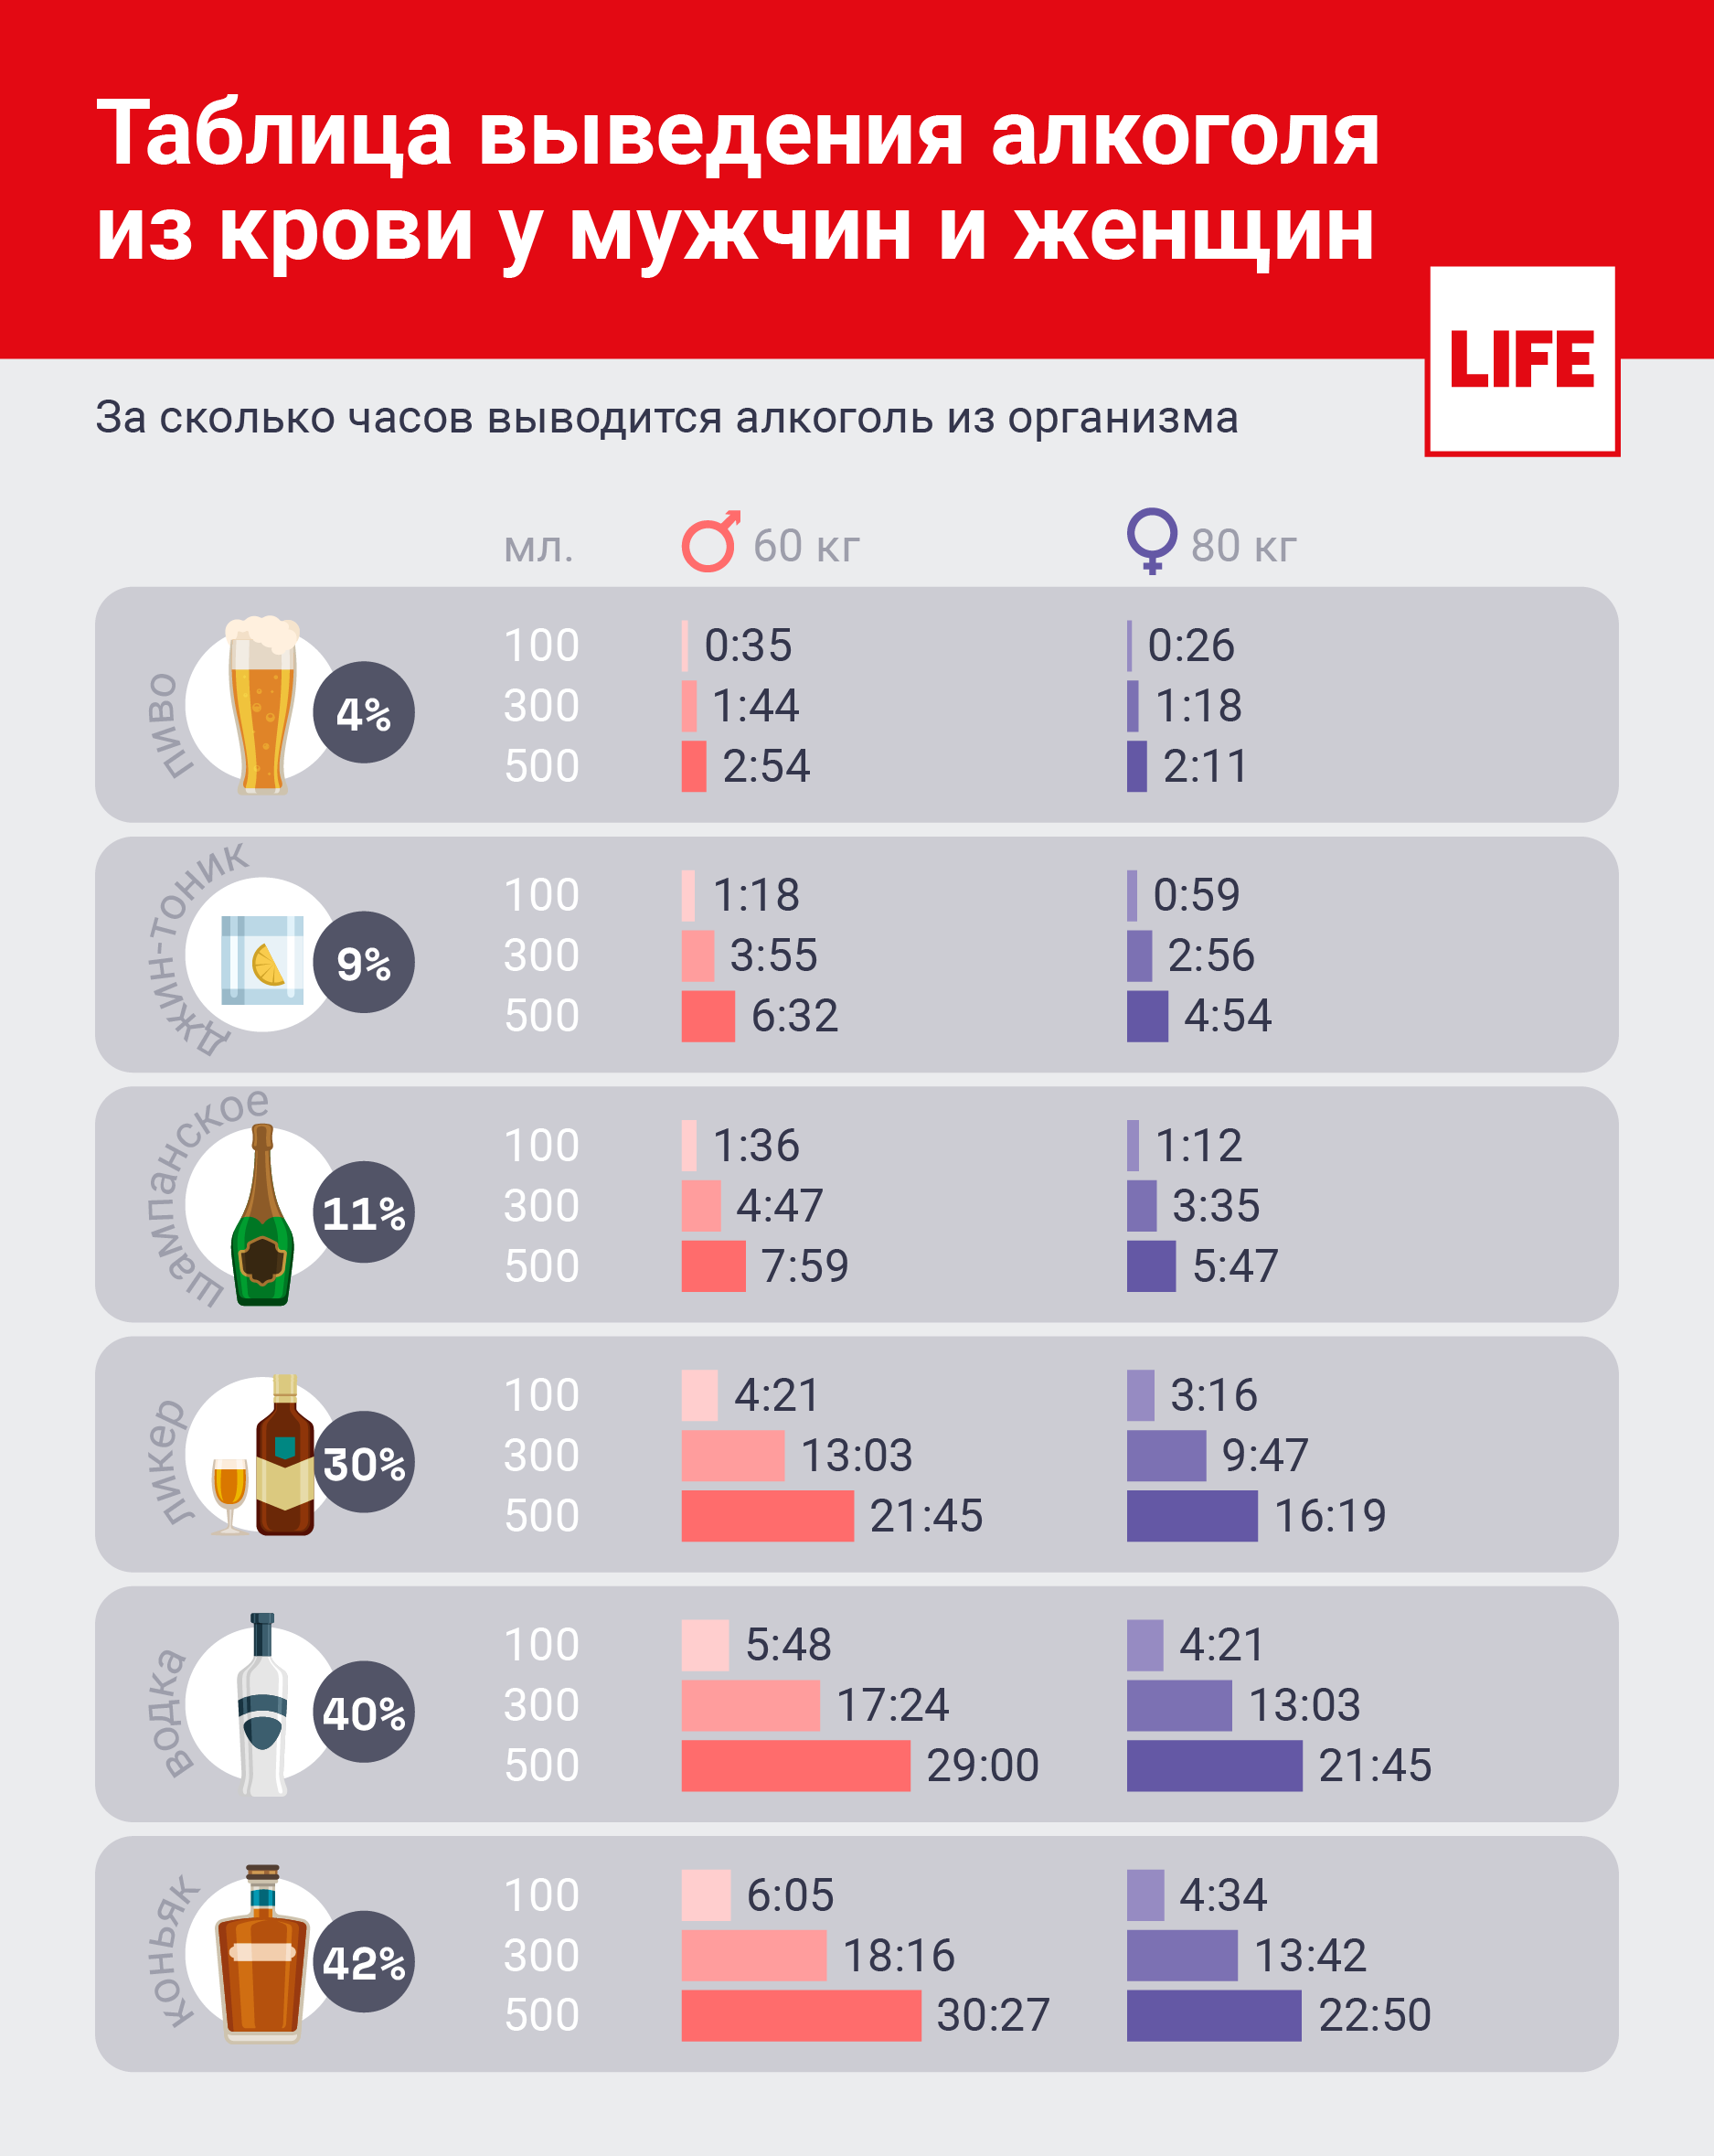 Таблица нормы потребления и выведения алкоголя из организма © LIFE 